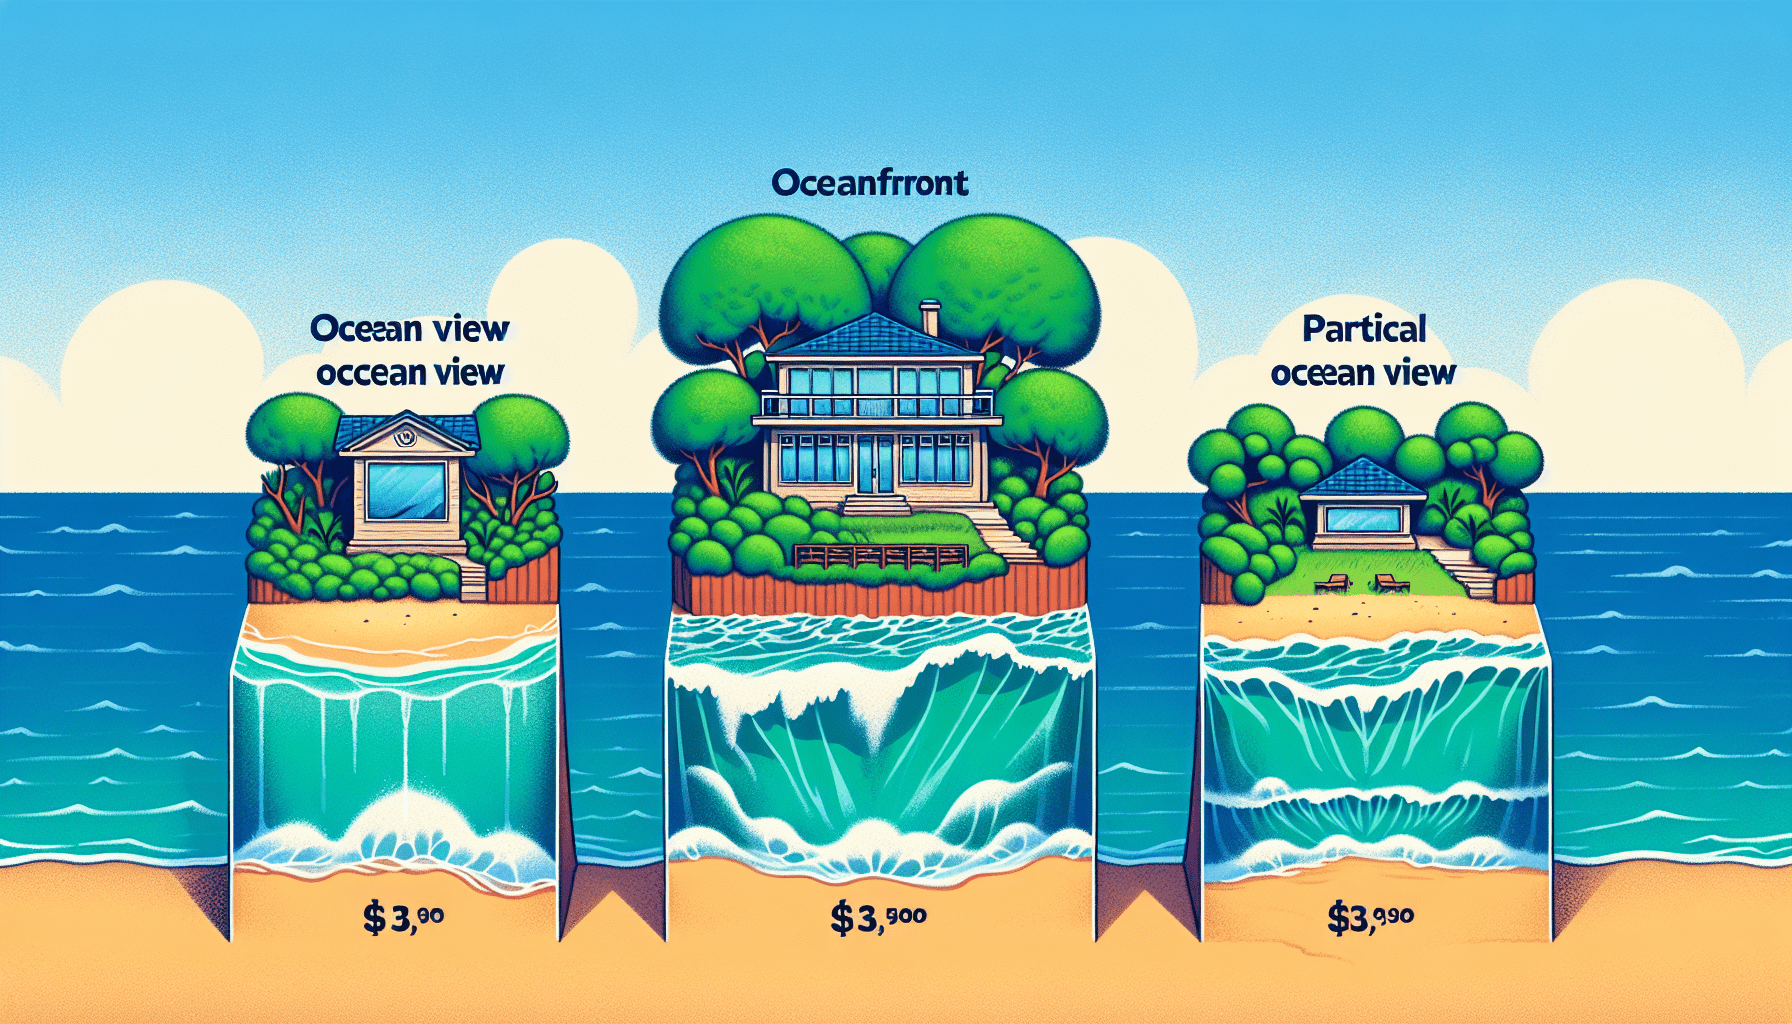 Understanding the Differences Between Ocean View, Oceanfront, and Partial Ocean View